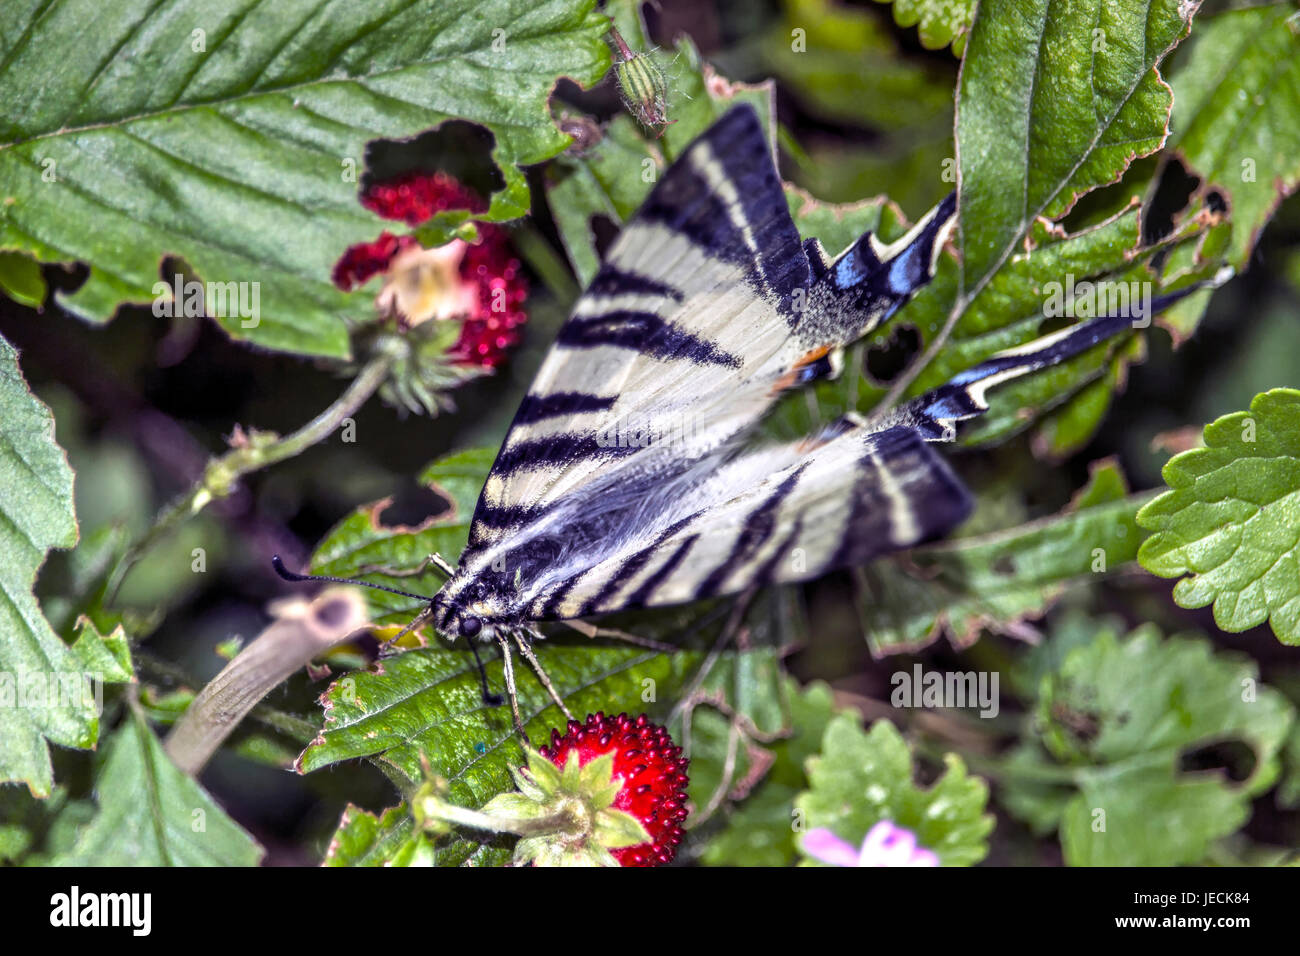 Knappen Schwalbenschwanz (Iphiclides Podalirius) auf eine wilde Erdbeere Blatt Stockfoto